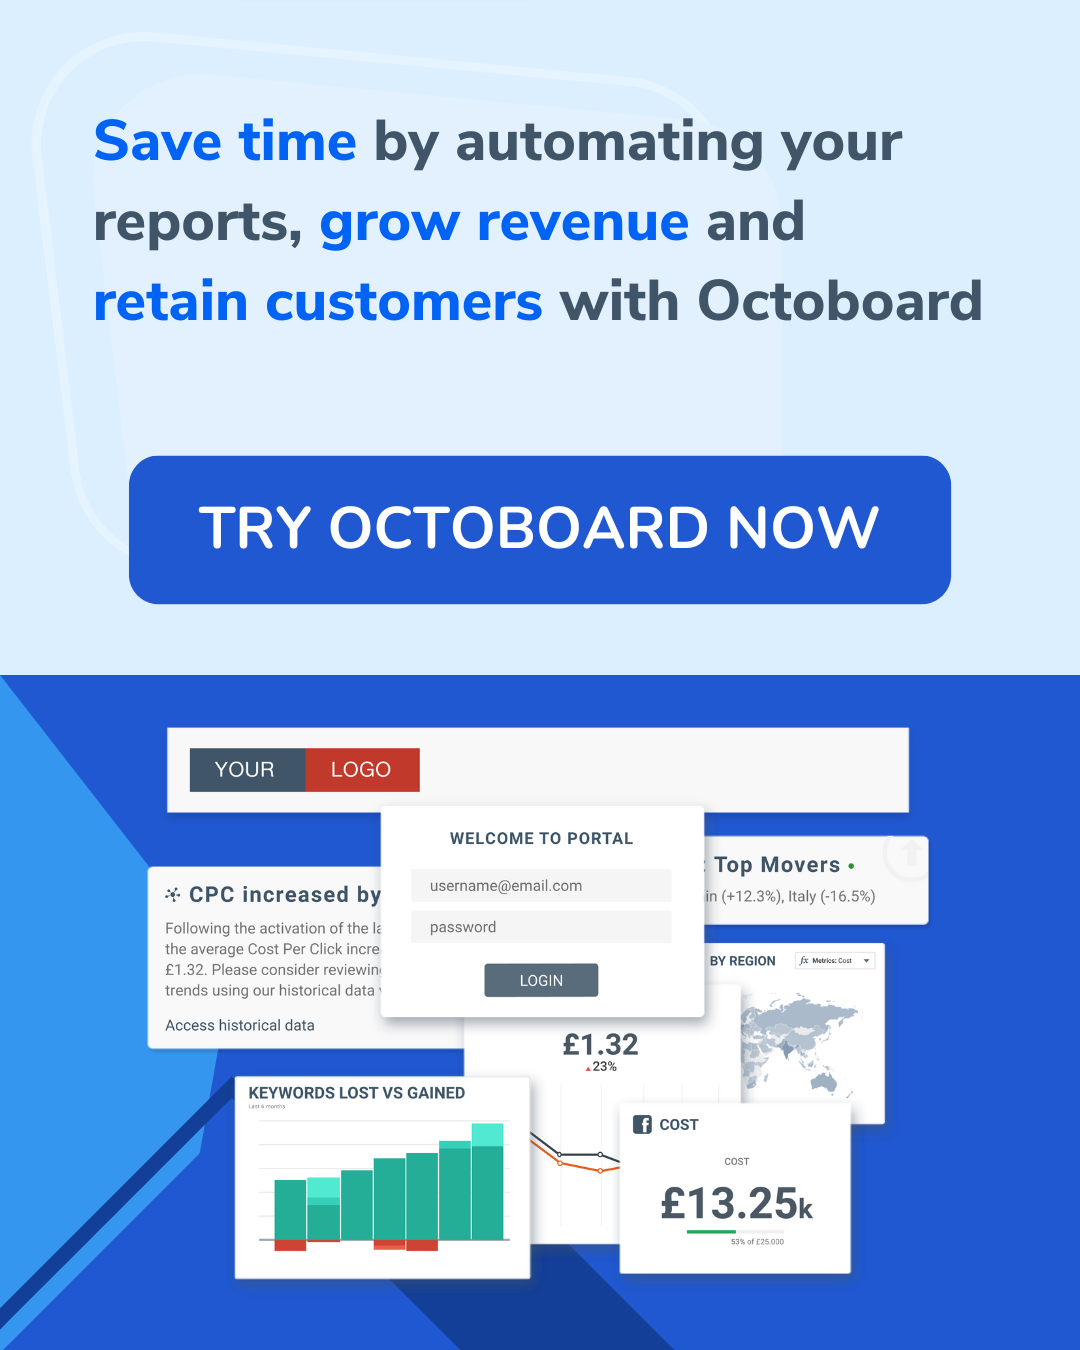 Gagnez du temps en automatisant vos rapports, augmentez vos revenus et fidélisez vos clients avec Octoboard.